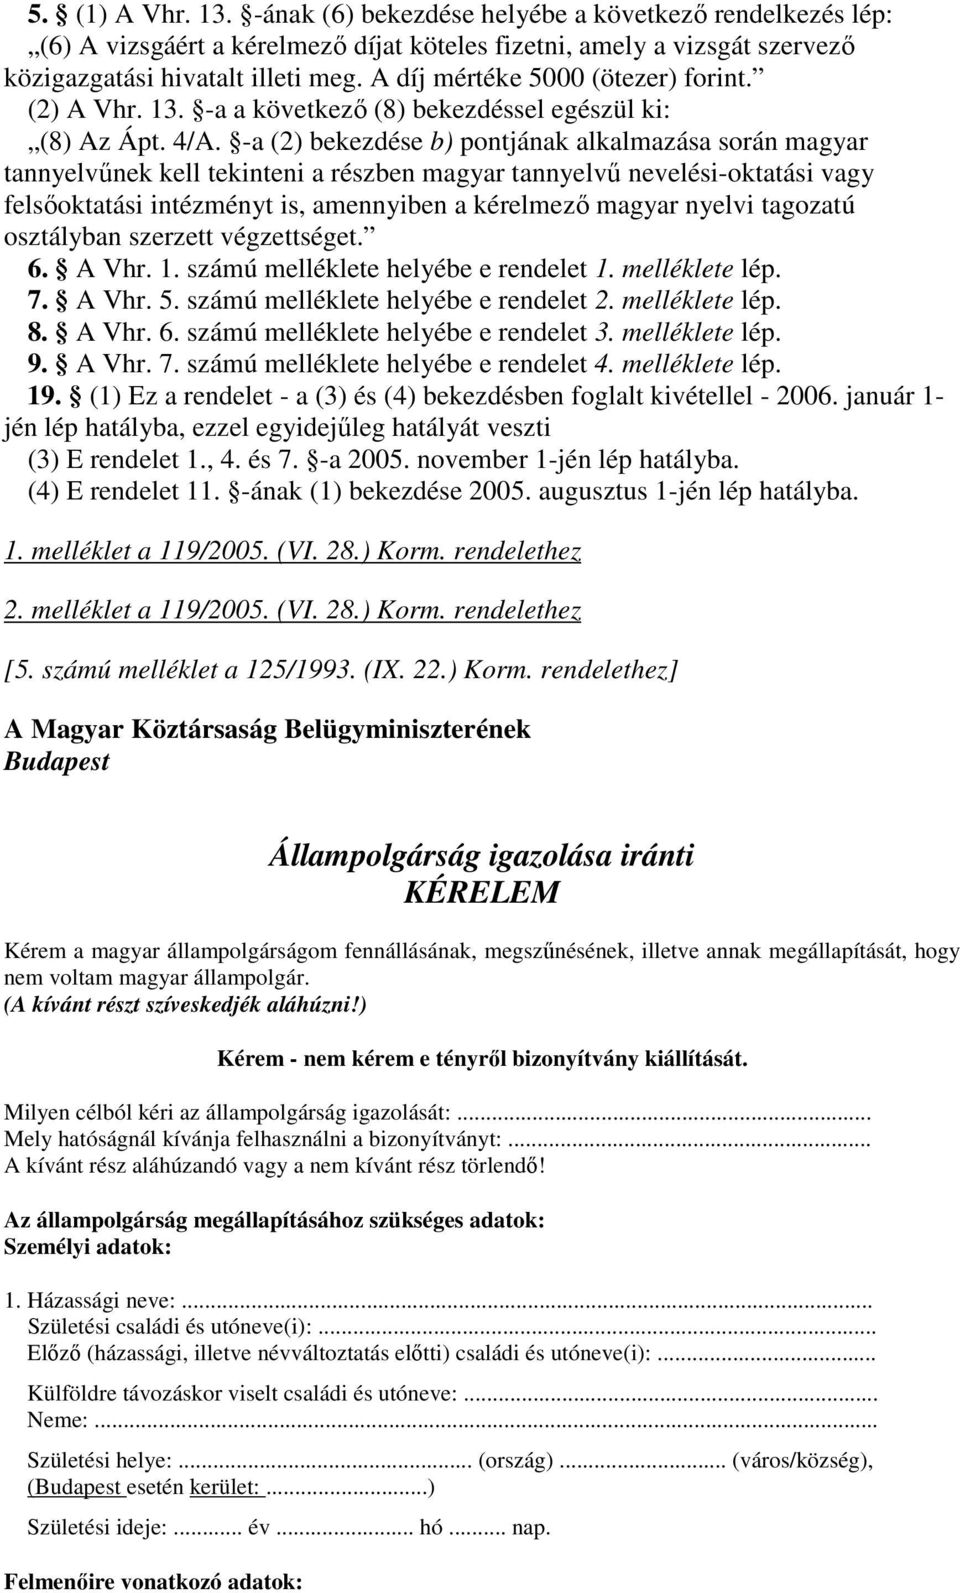 -a (2) bekezdése b) pontjának alkalmazása során magyar tannyelvnek kell tekinteni a részben magyar tannyelv nevelési-oktatási vagy felsoktatási intézményt is, amennyiben a kérelmez magyar nyelvi